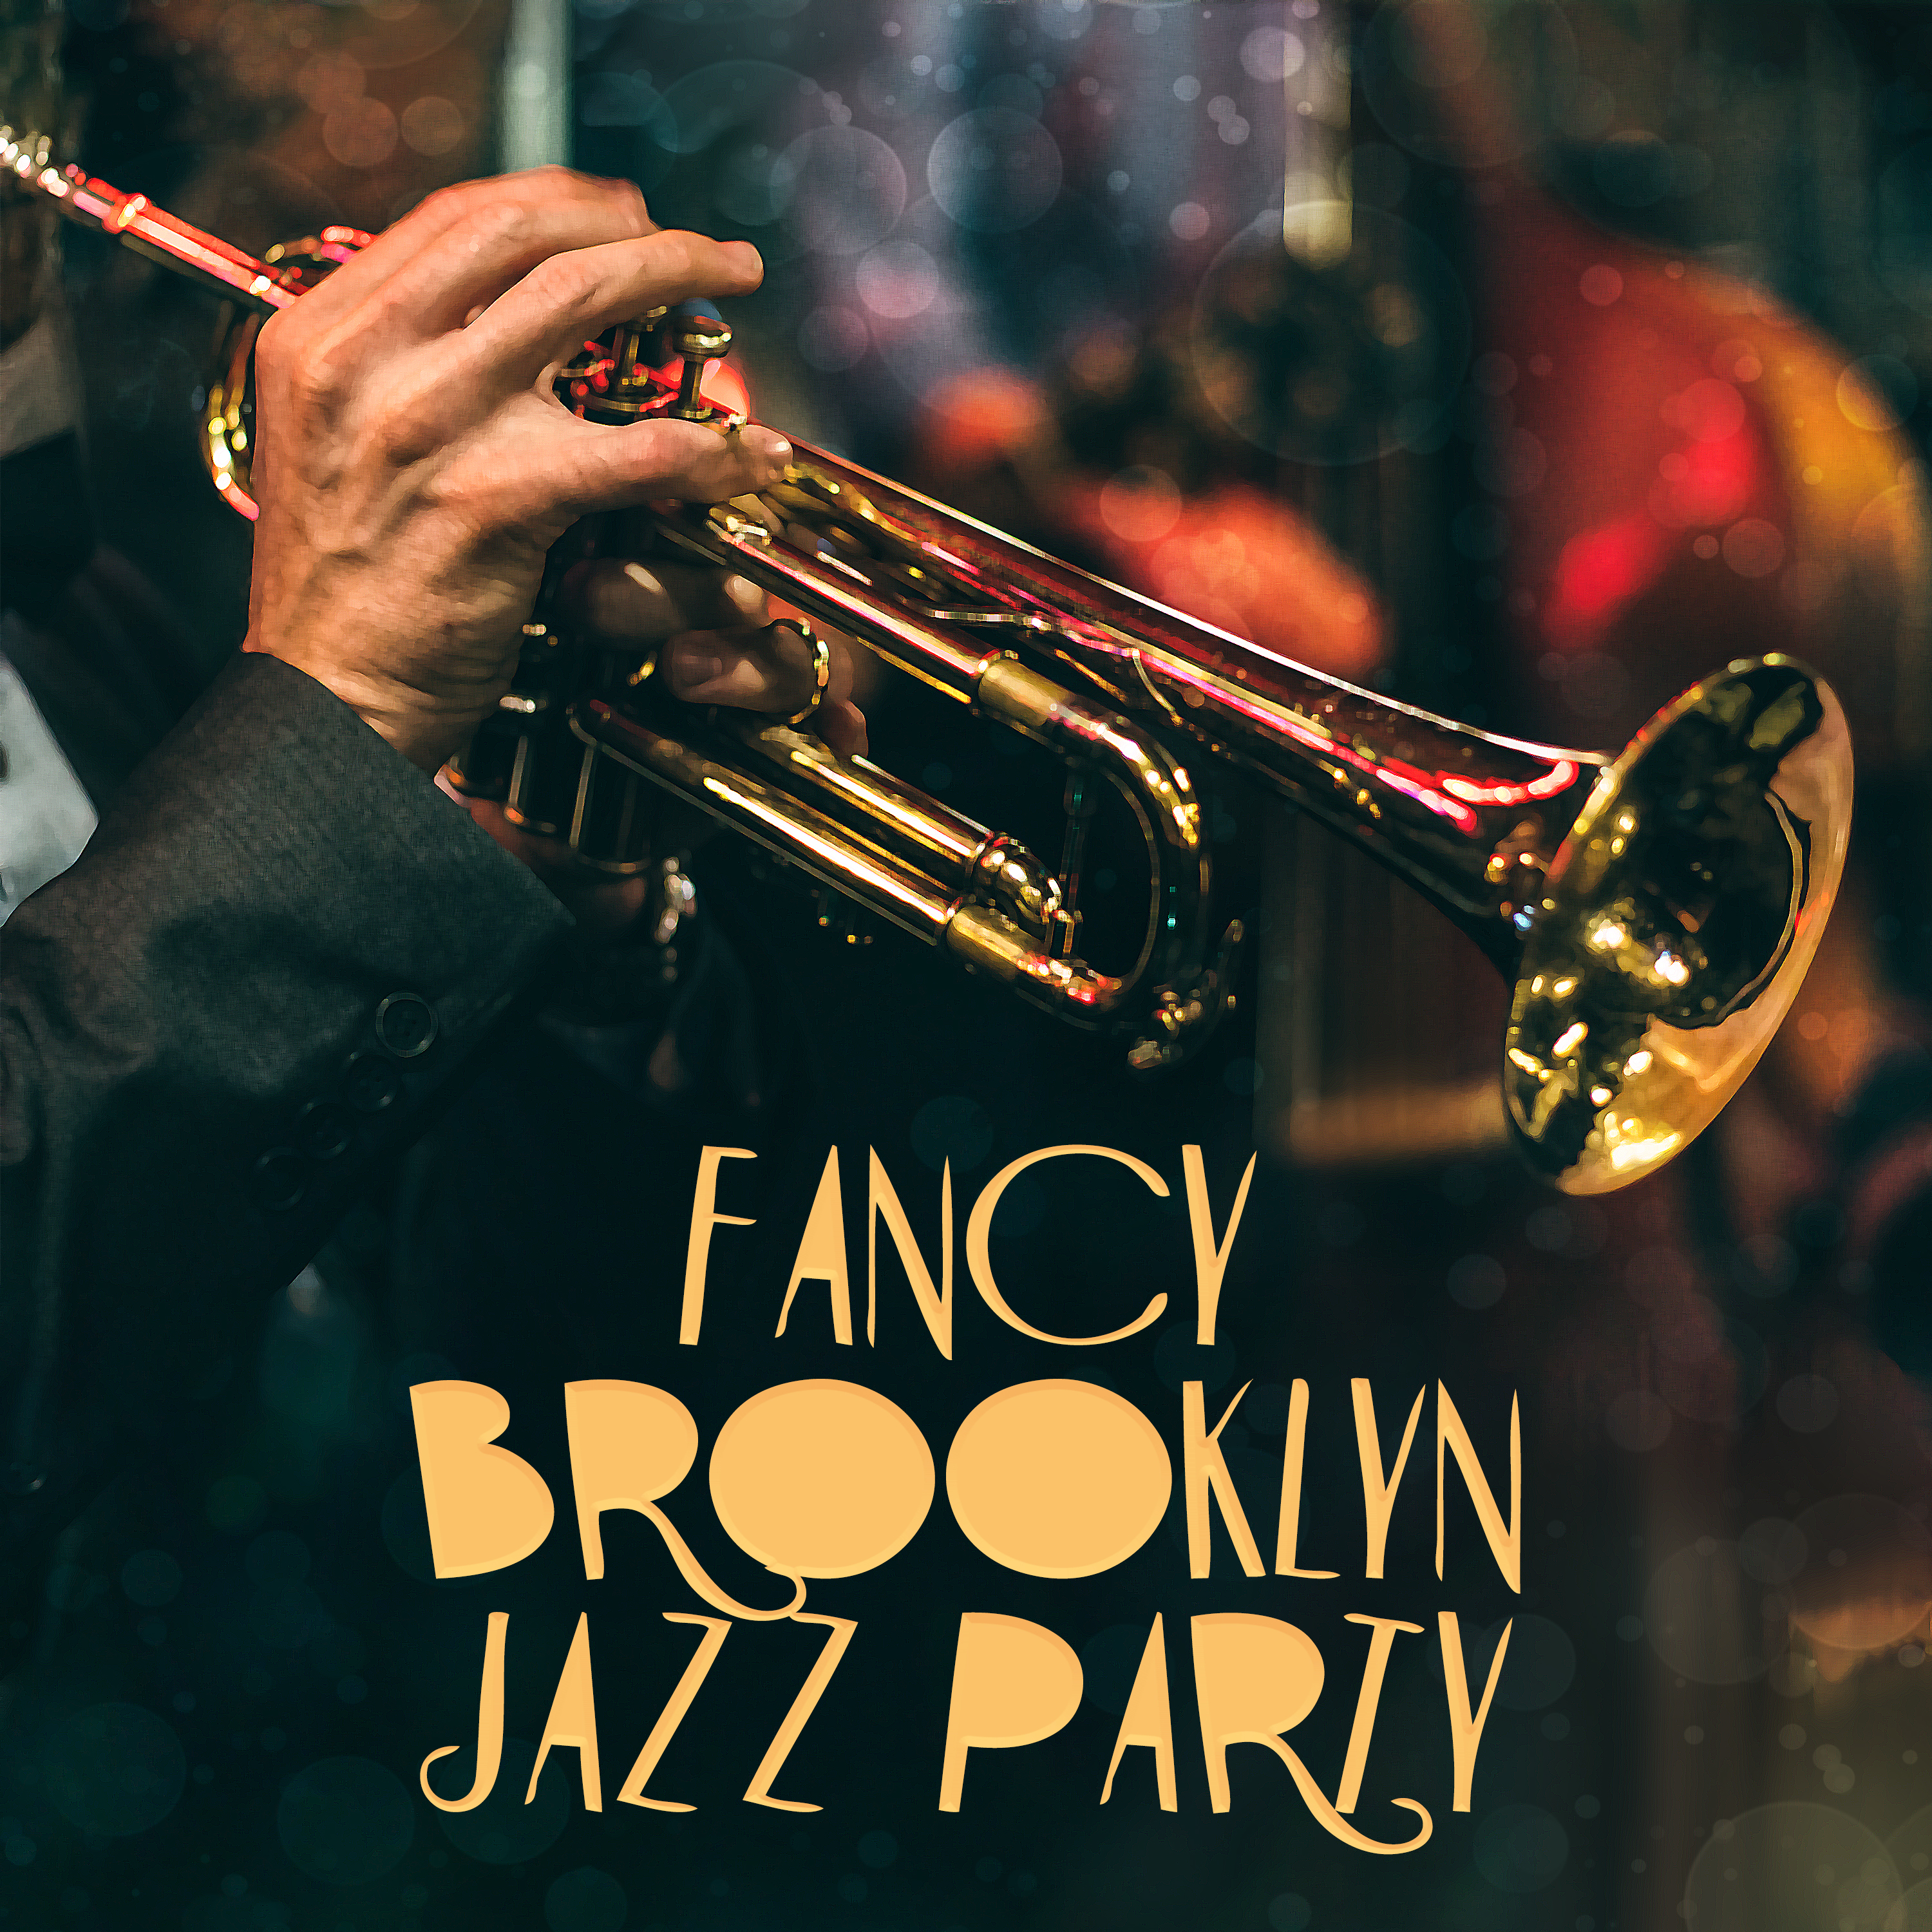 Fancy Brooklyn Jazz Party